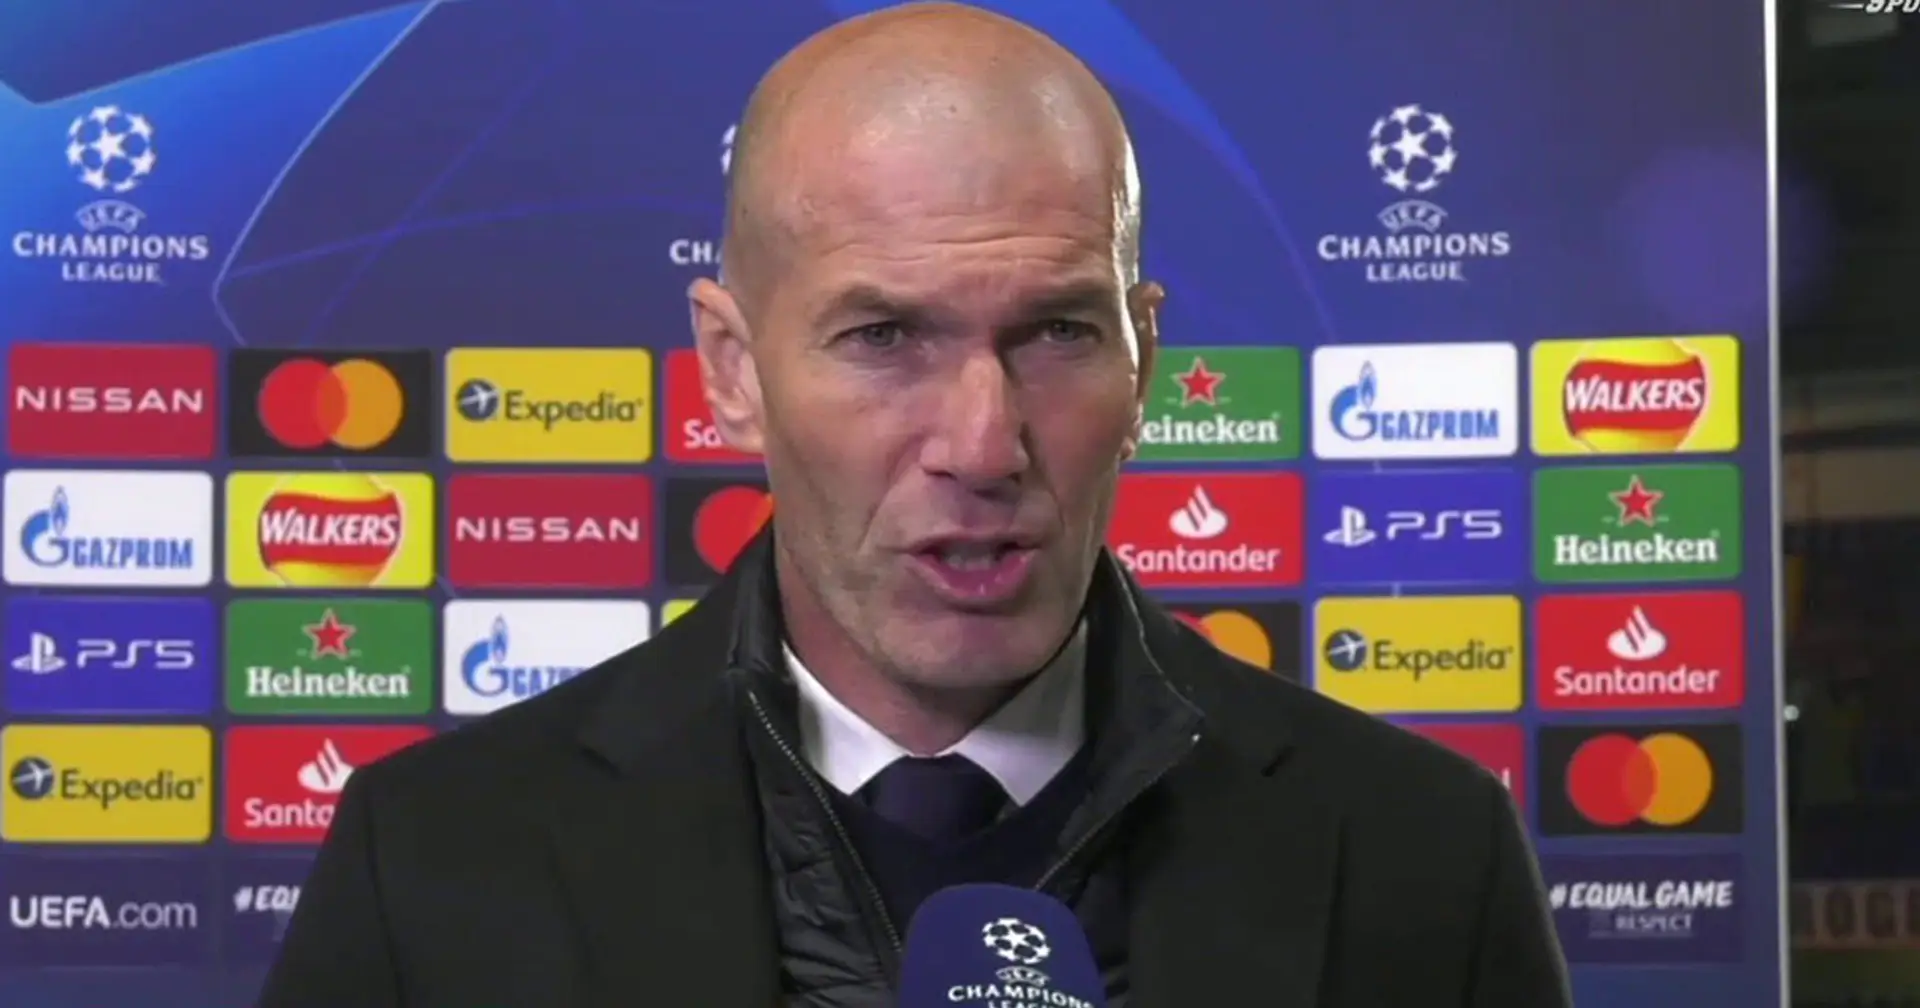 Zidane cite un joueur du Real Madrid qui a "dépassé" toutes les attentes - c'est lui